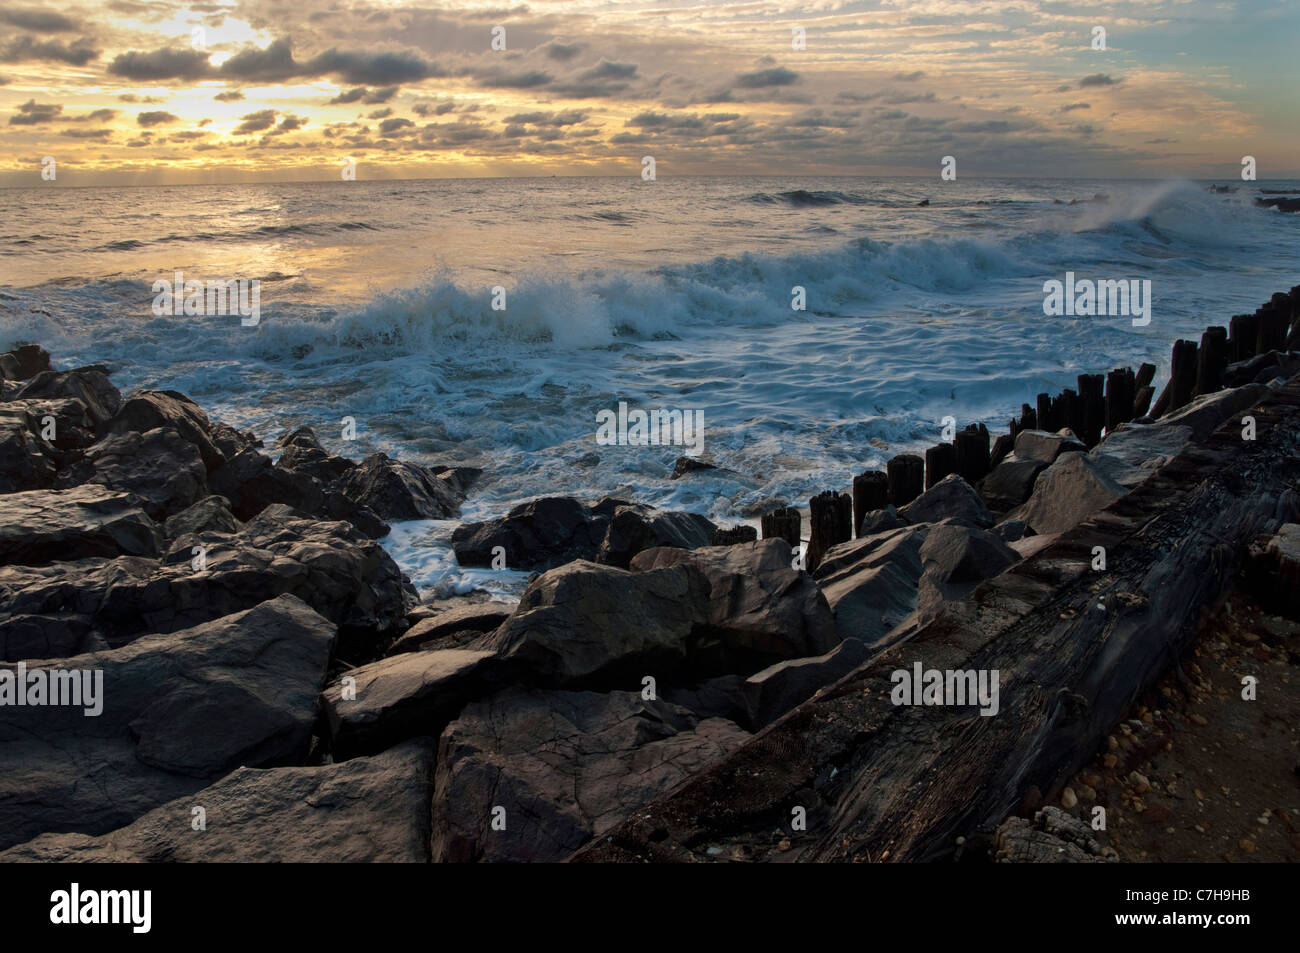 En mer, les vagues se brisant sur les rochers au lever du soleil à Long Branch, NJ Banque D'Images